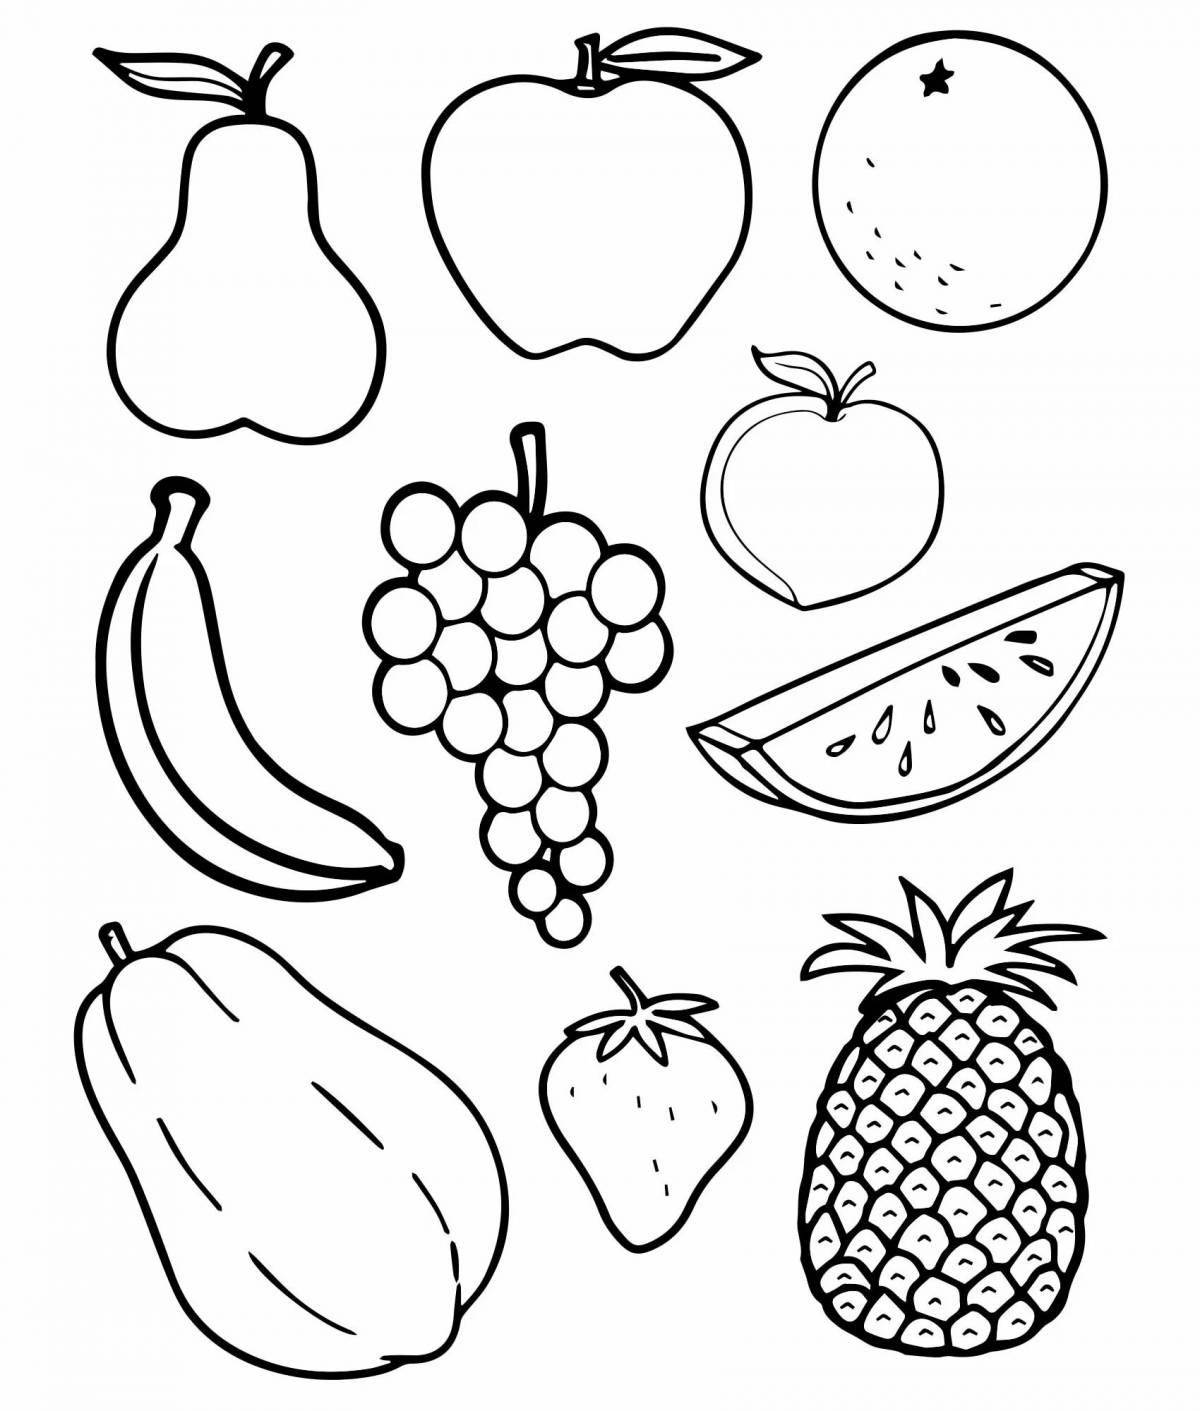 Детские раскраски на тему «Овощи и фрукты» для дошкольников